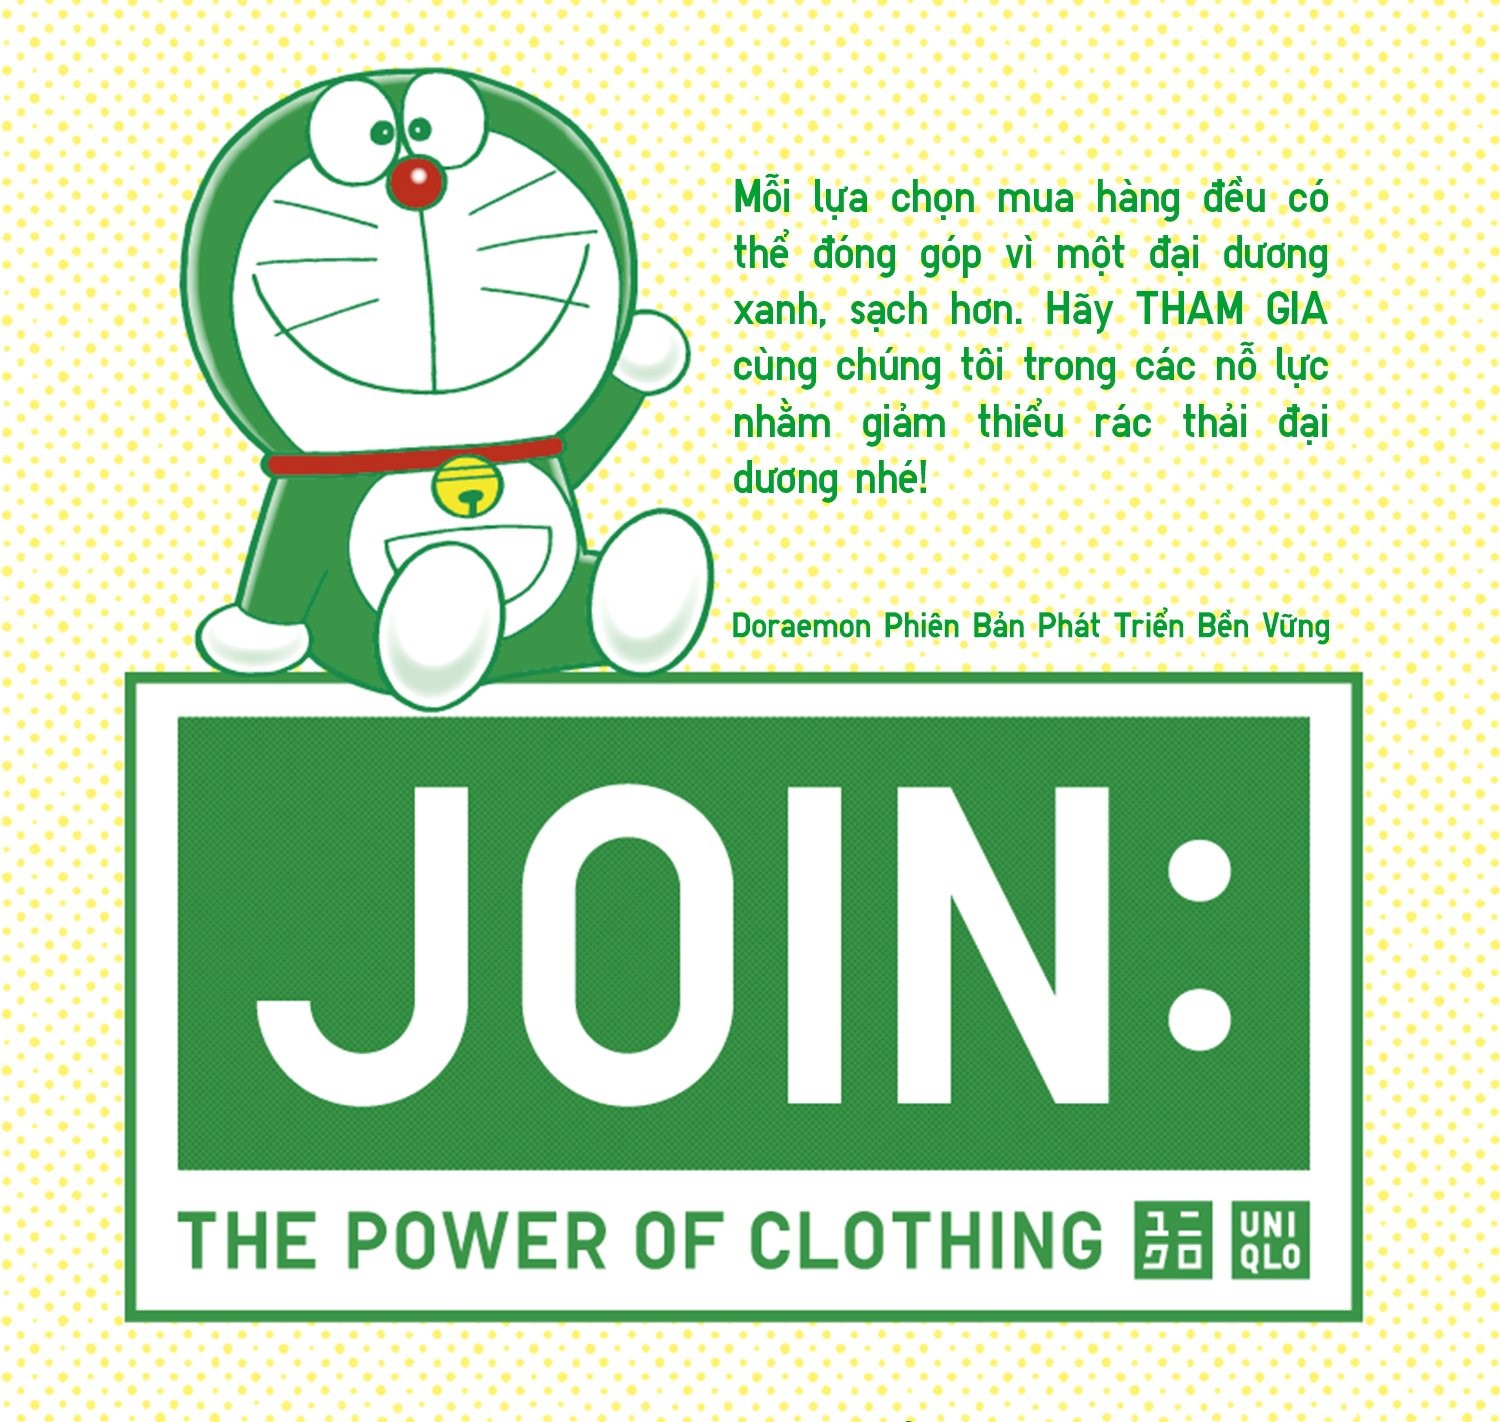 Uniqlo ra mắt bộ sưu tập Doraemon xanh lá 100% từ chất liệu tái chế, thông điệp phát triển bền vững chưa bao giờ gần gũi đến thế! - Ảnh 1.